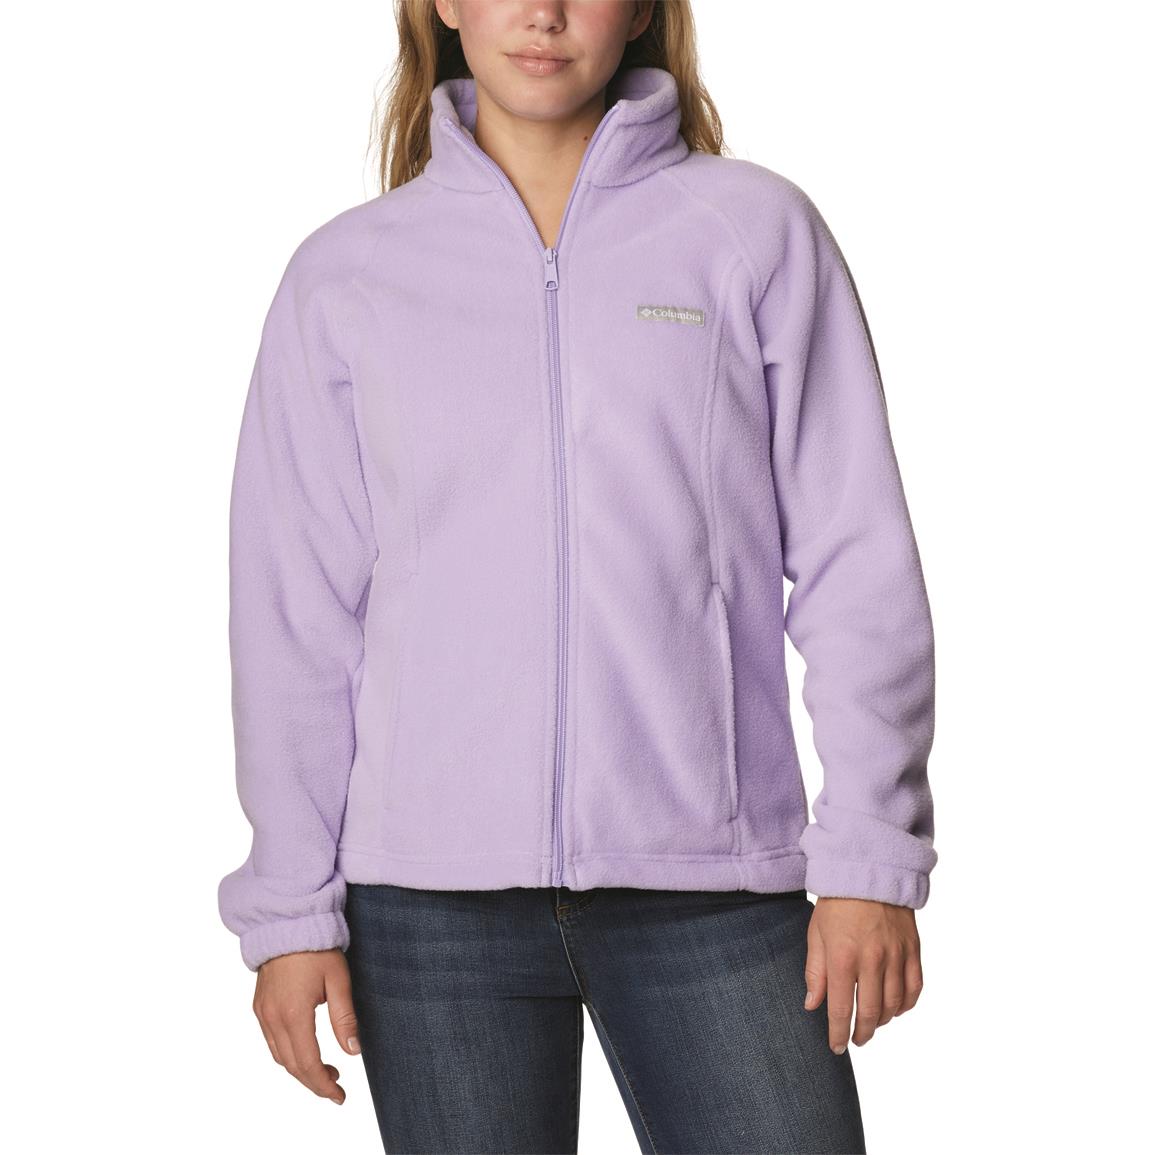 Columbia Women's Benton Springs Full Zip Fleece Jacket, Frosted Purple